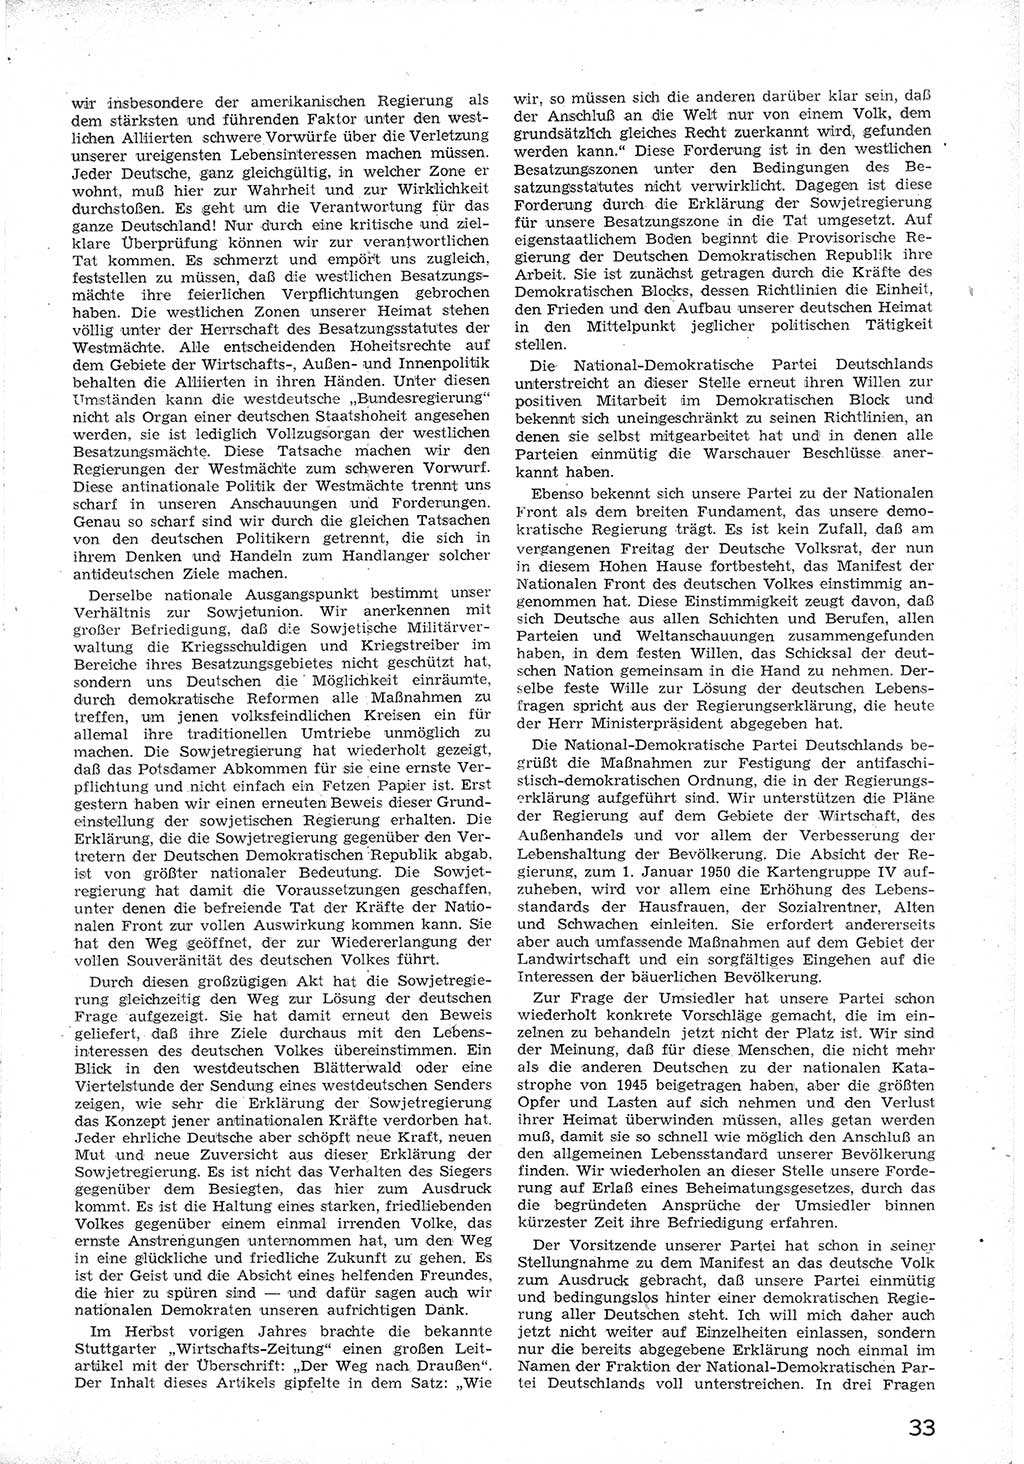 Provisorische Volkskammer (VK) der Deutschen Demokratischen Republik (DDR) 1949-1950, Dokument 45 (Prov. VK DDR 1949-1950, Dok. 45)